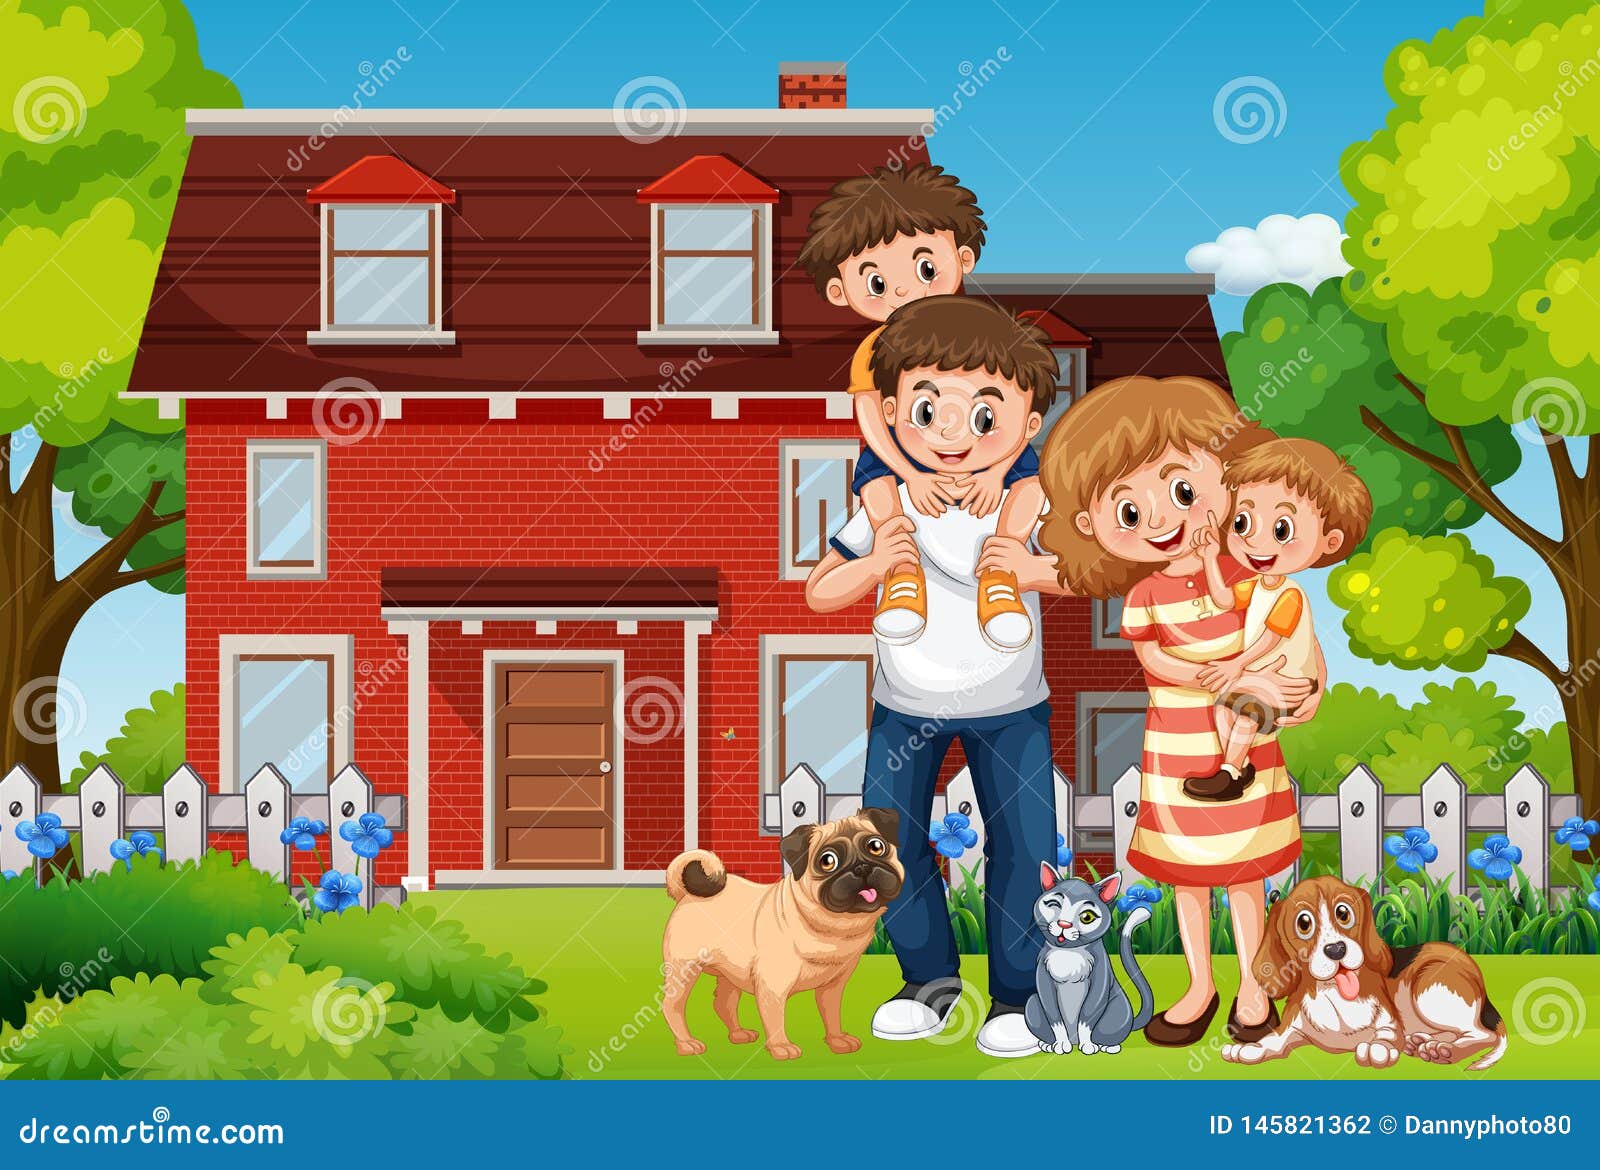 Нарисовать будущую семью дом и домашнее хозяйство. Семья в домике. Мультяшная счастливая семья и дом. Мультяшный дом с семьей. Мои дом и семья.